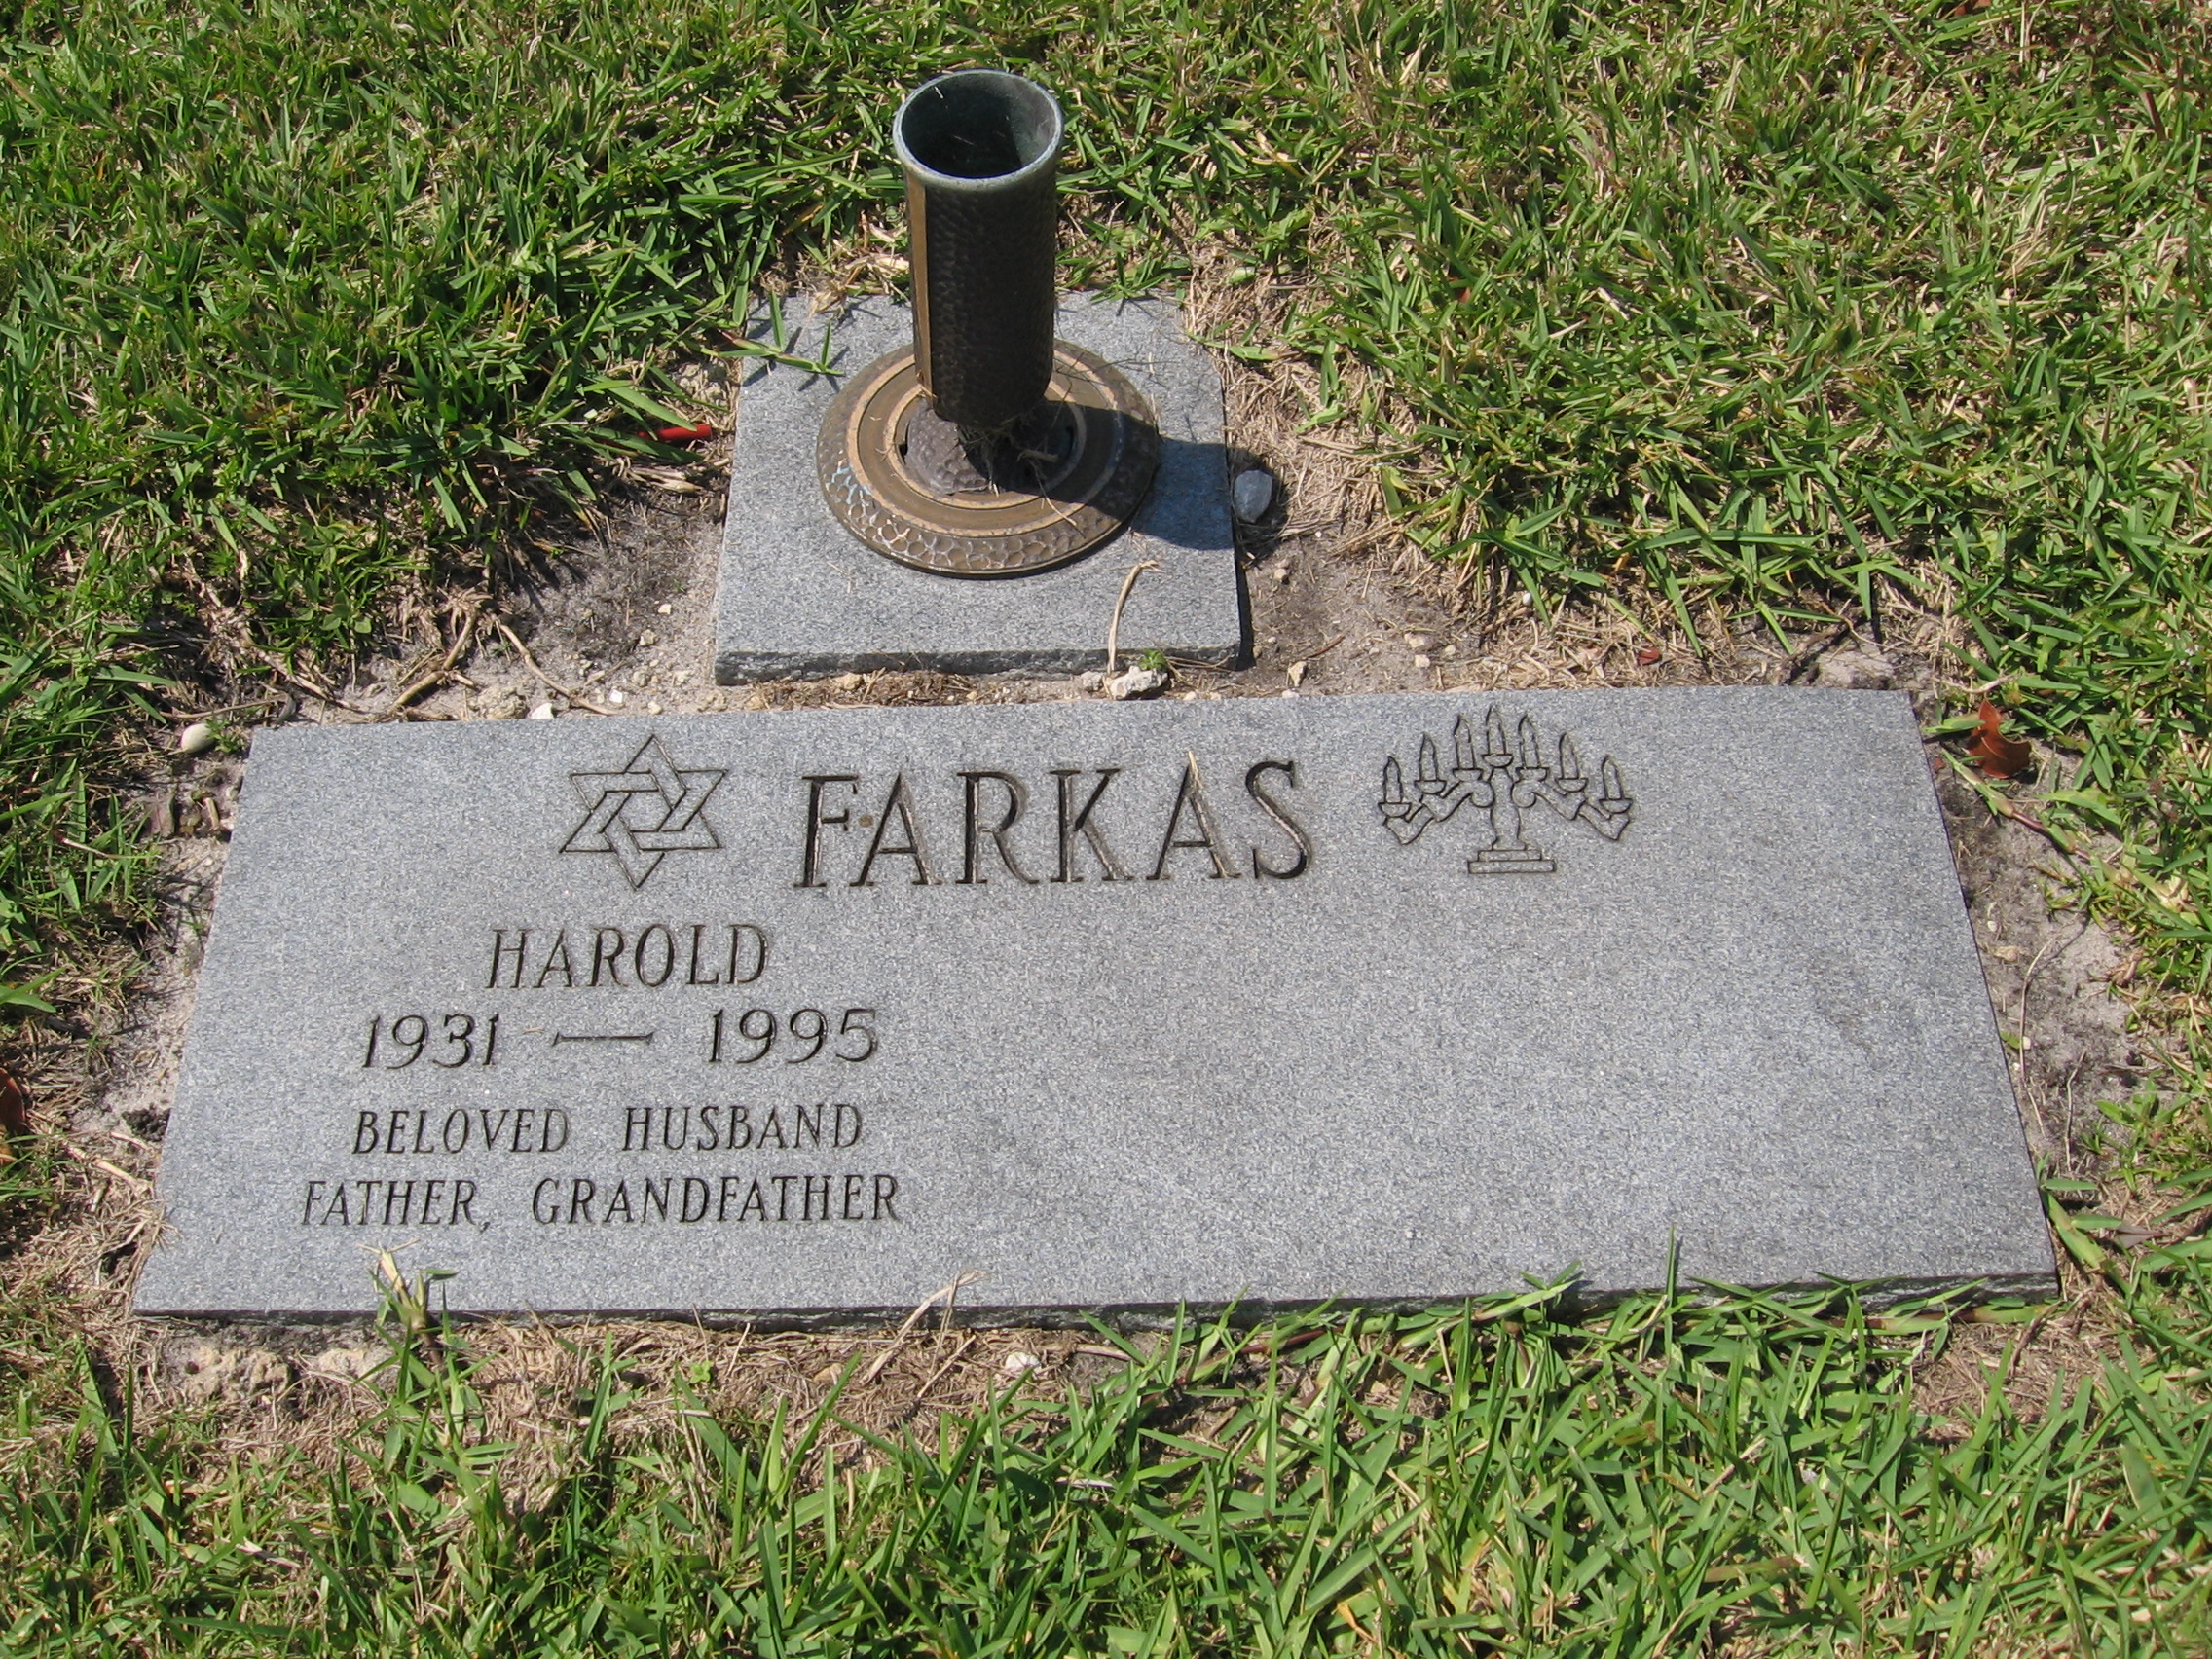 Harold Farkas